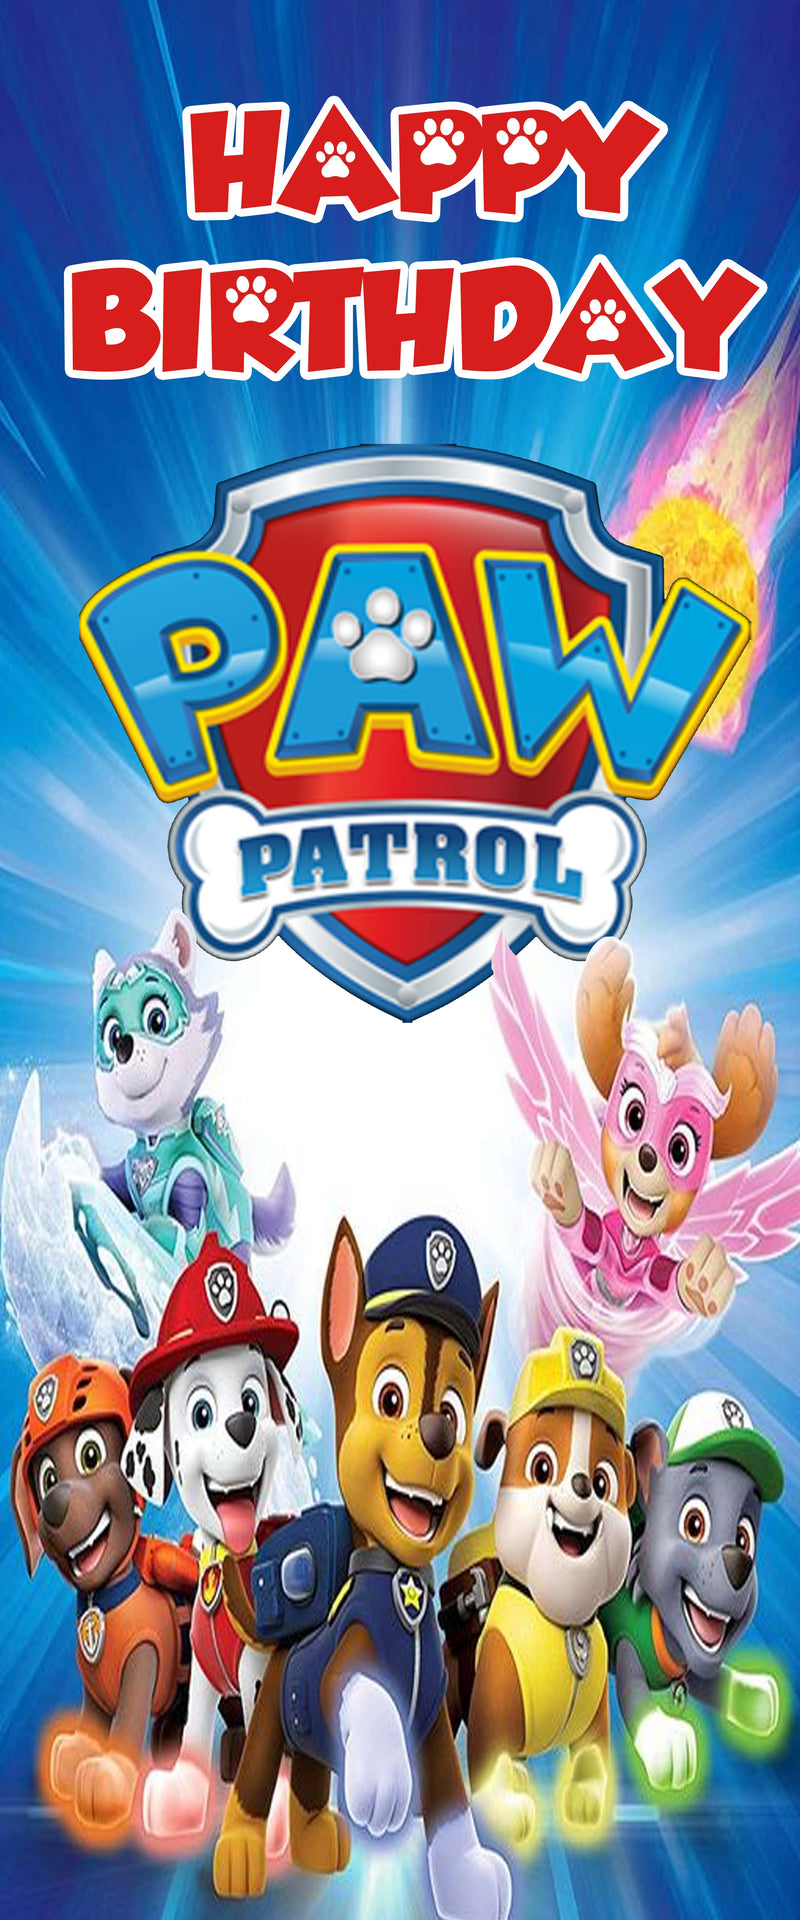 Paw Patrol door decoration  Door poster, Paw patrol birthday party, Paw  patrol birthday